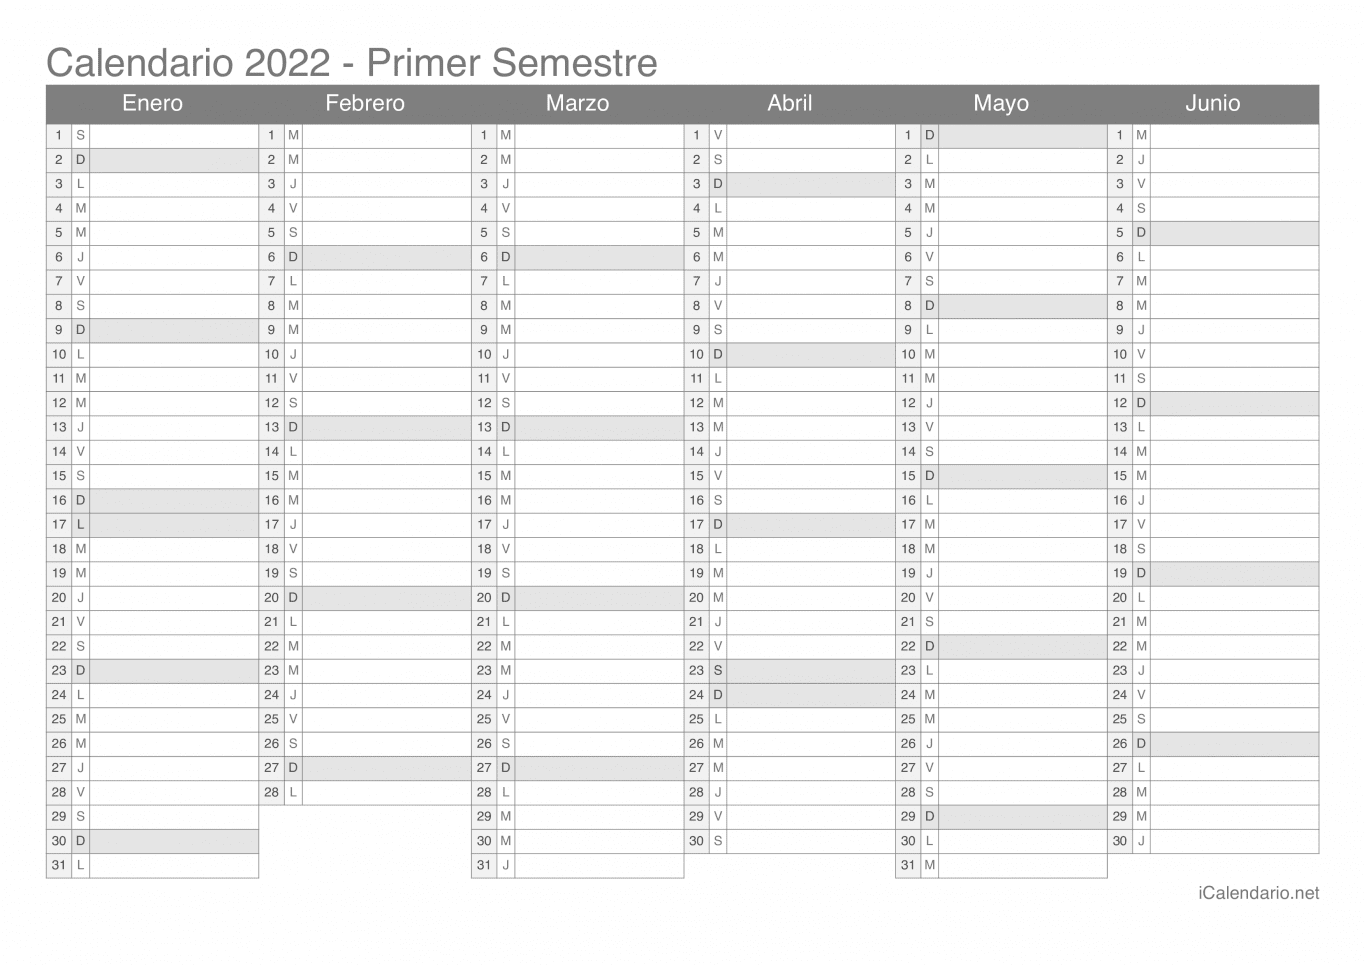 Calendario por semestre 2022